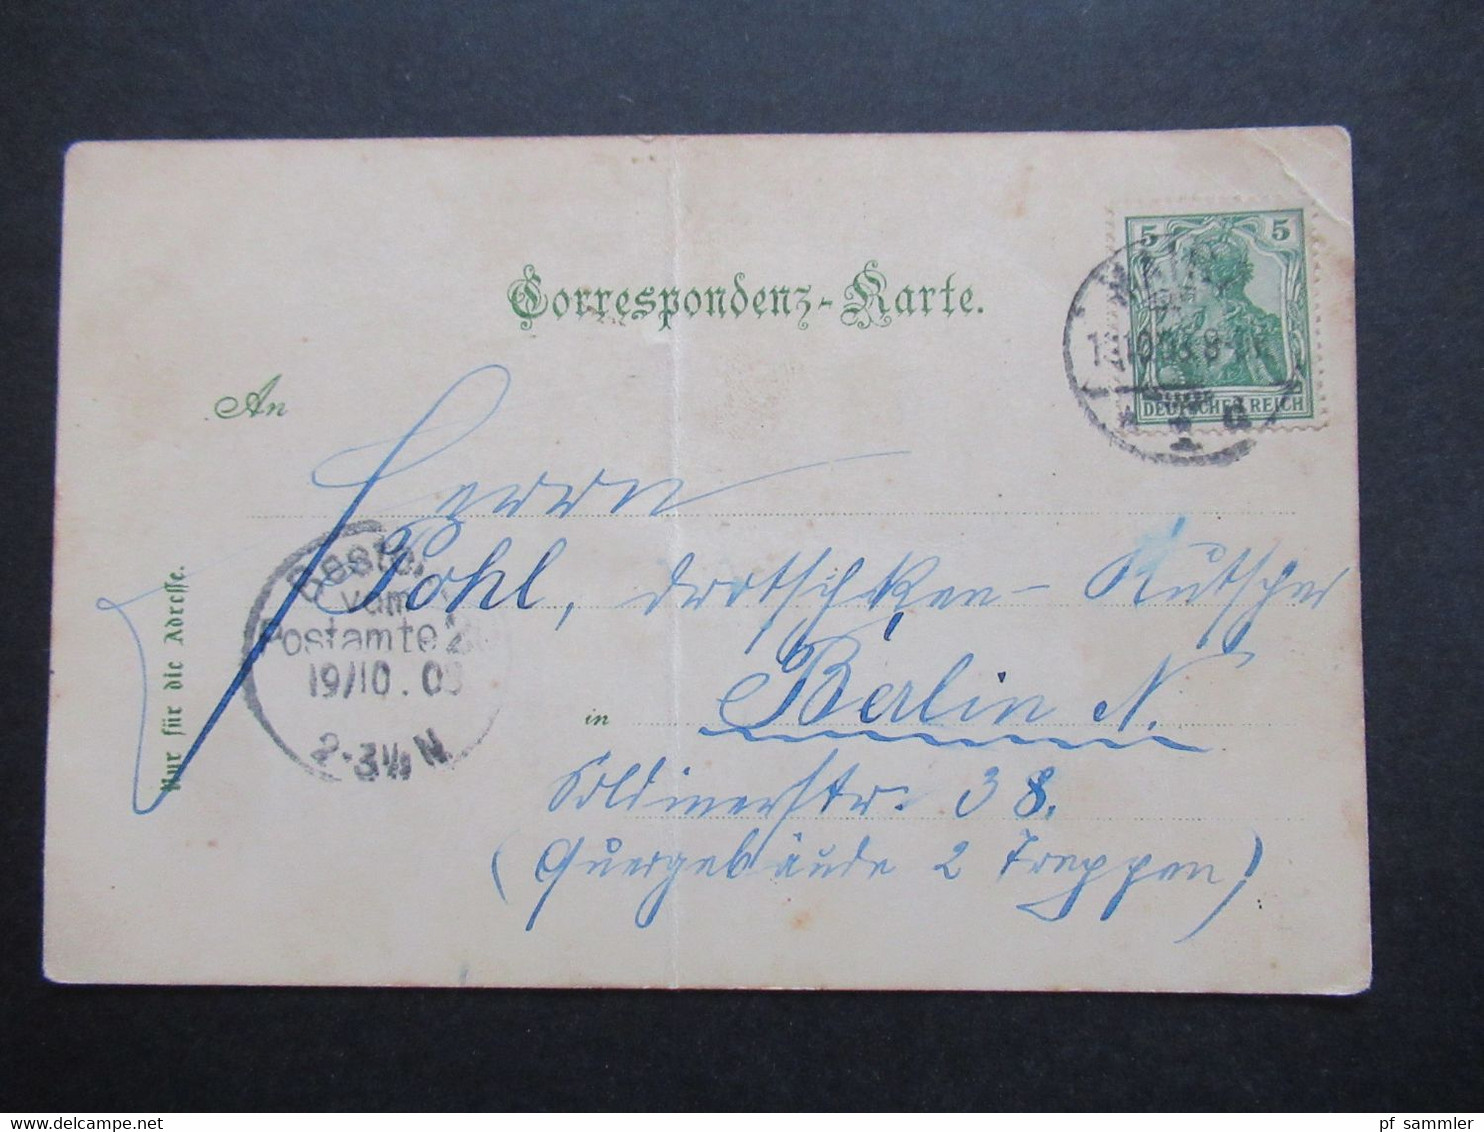 Österreich / DR 1903 Litho Gruss Aus Zwentendorf Mehrbildkarte Kirche Handlung Karl Zellhofer. Verlag Edgar Schmidt Dres - Gruss Aus.../ Grüsse Aus...